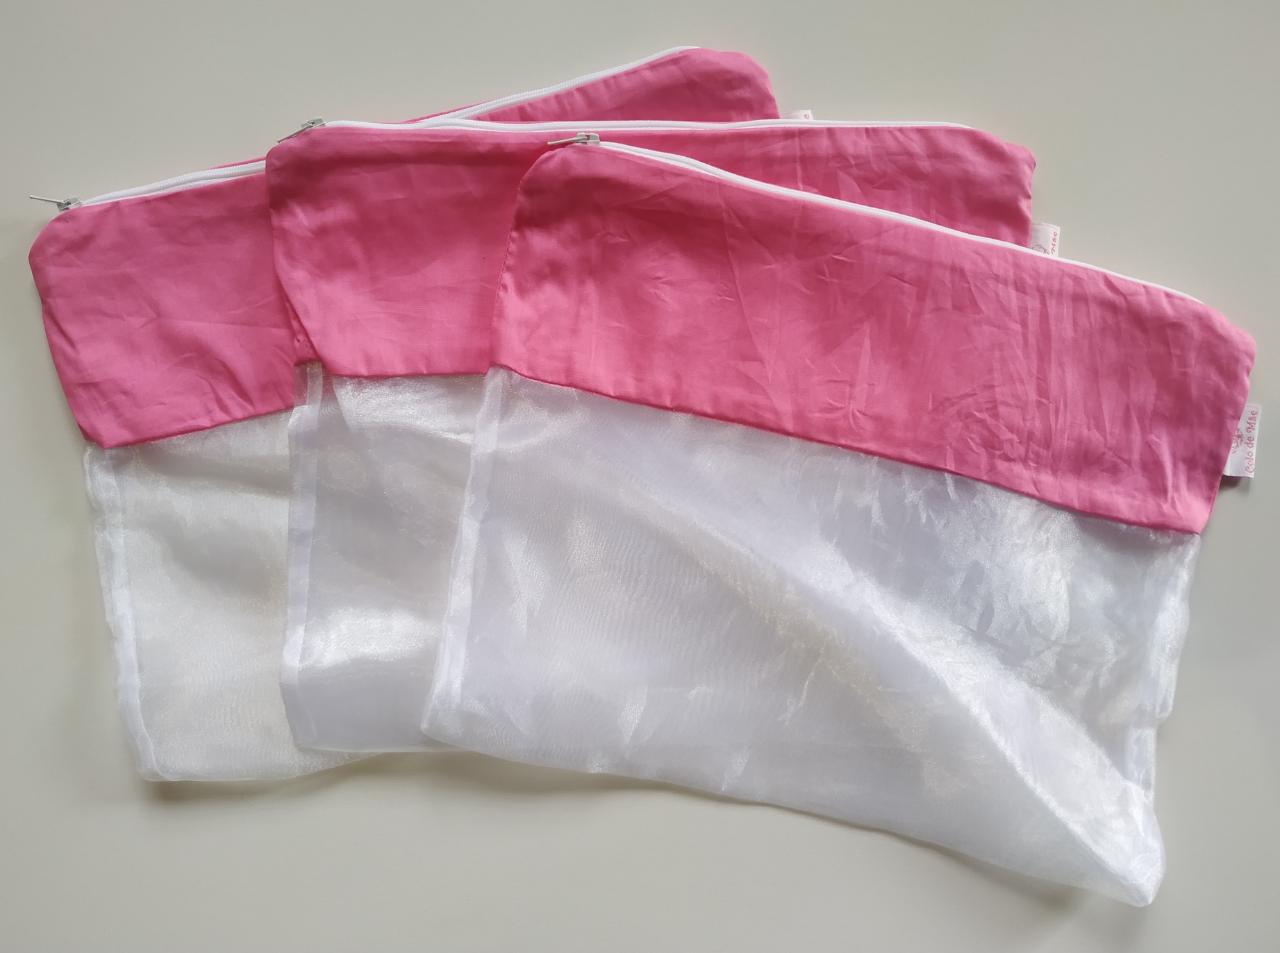 Saquinho Organizador de Roupas para maternidade – kit com 3 unidades Pink